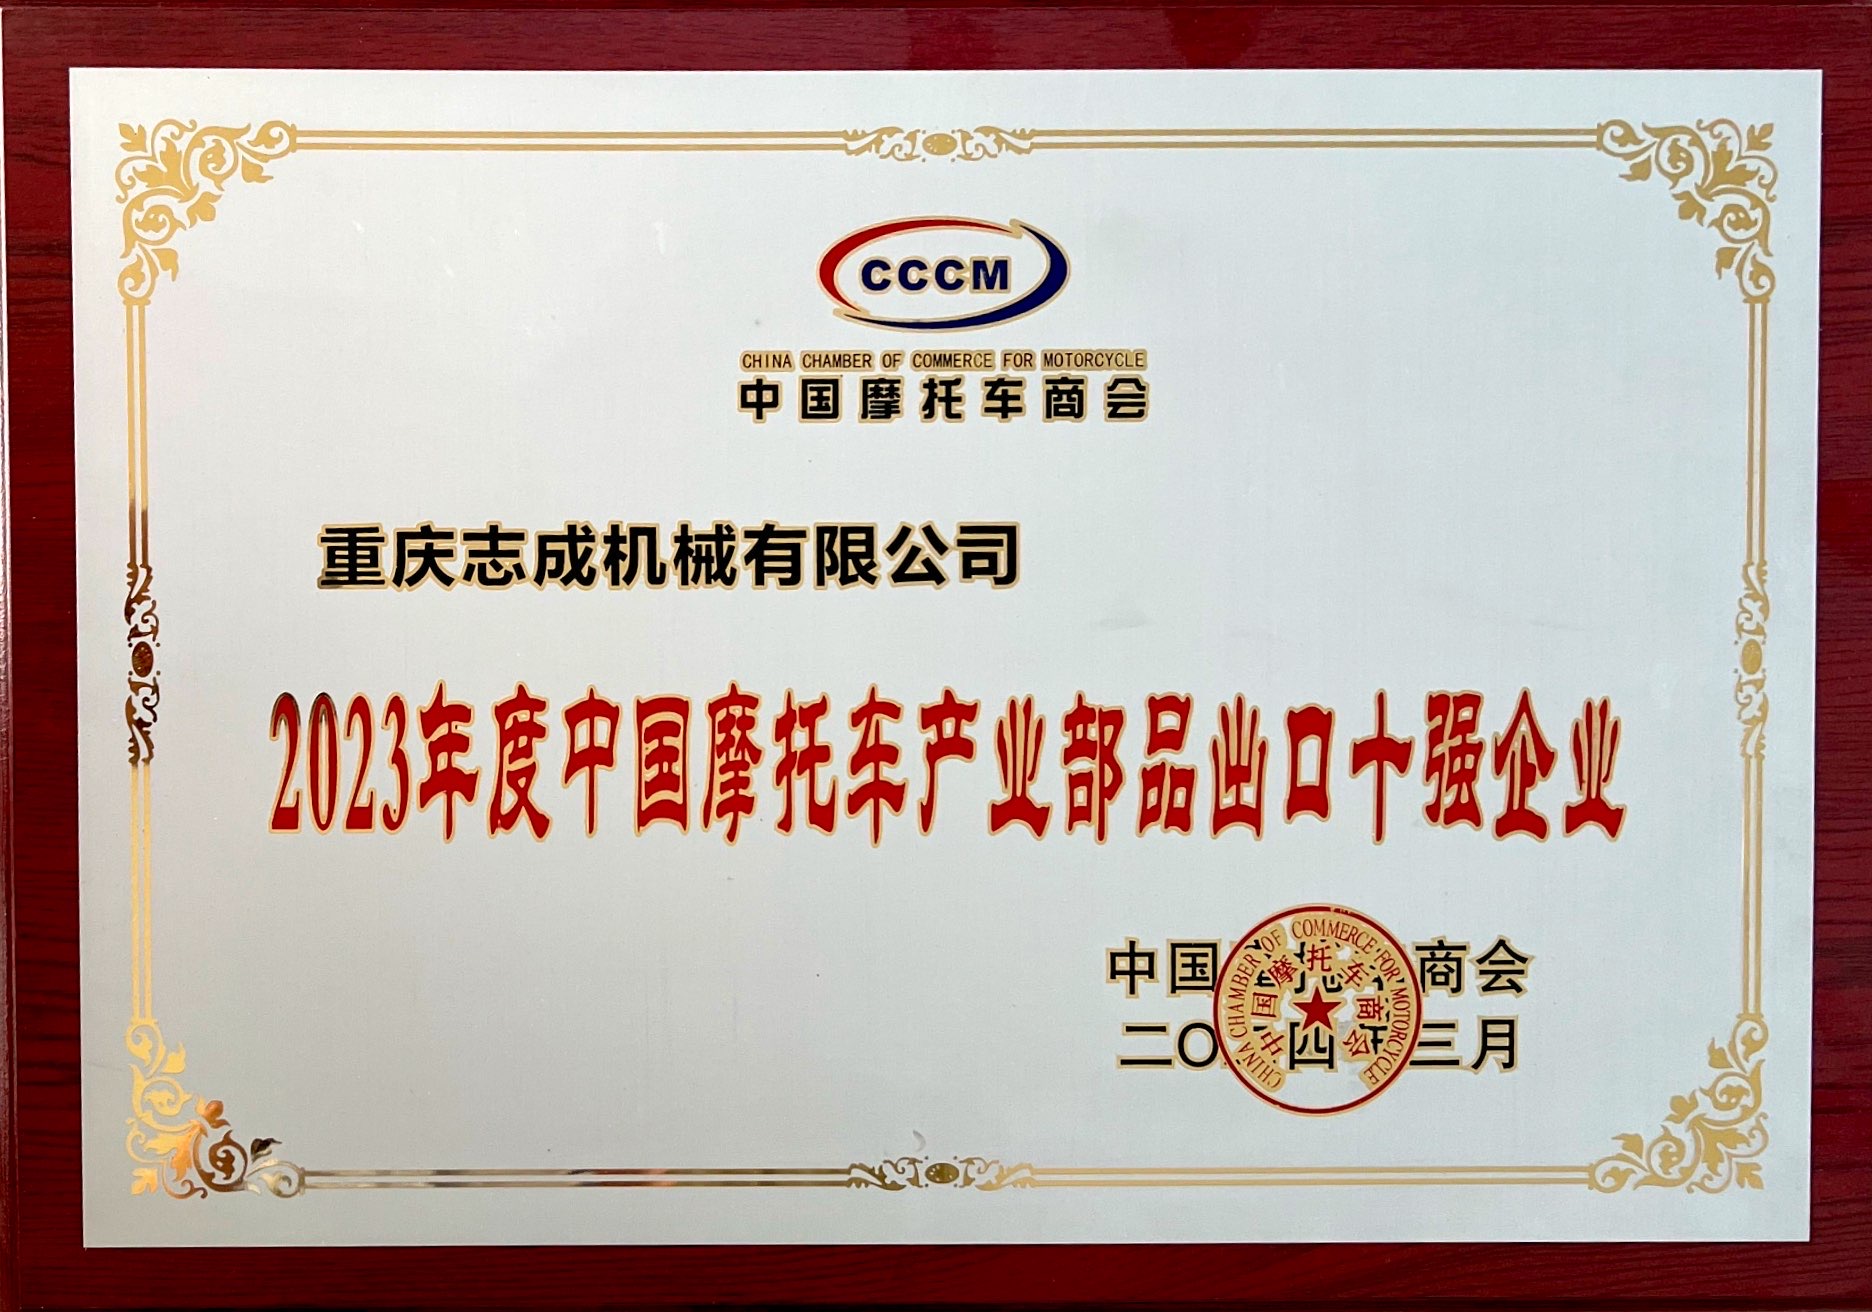 喜報丨熱烈祝賀我司喜獲CCCM中國摩托車商會“2023年度中國摩托車產業部品出口十強工業”